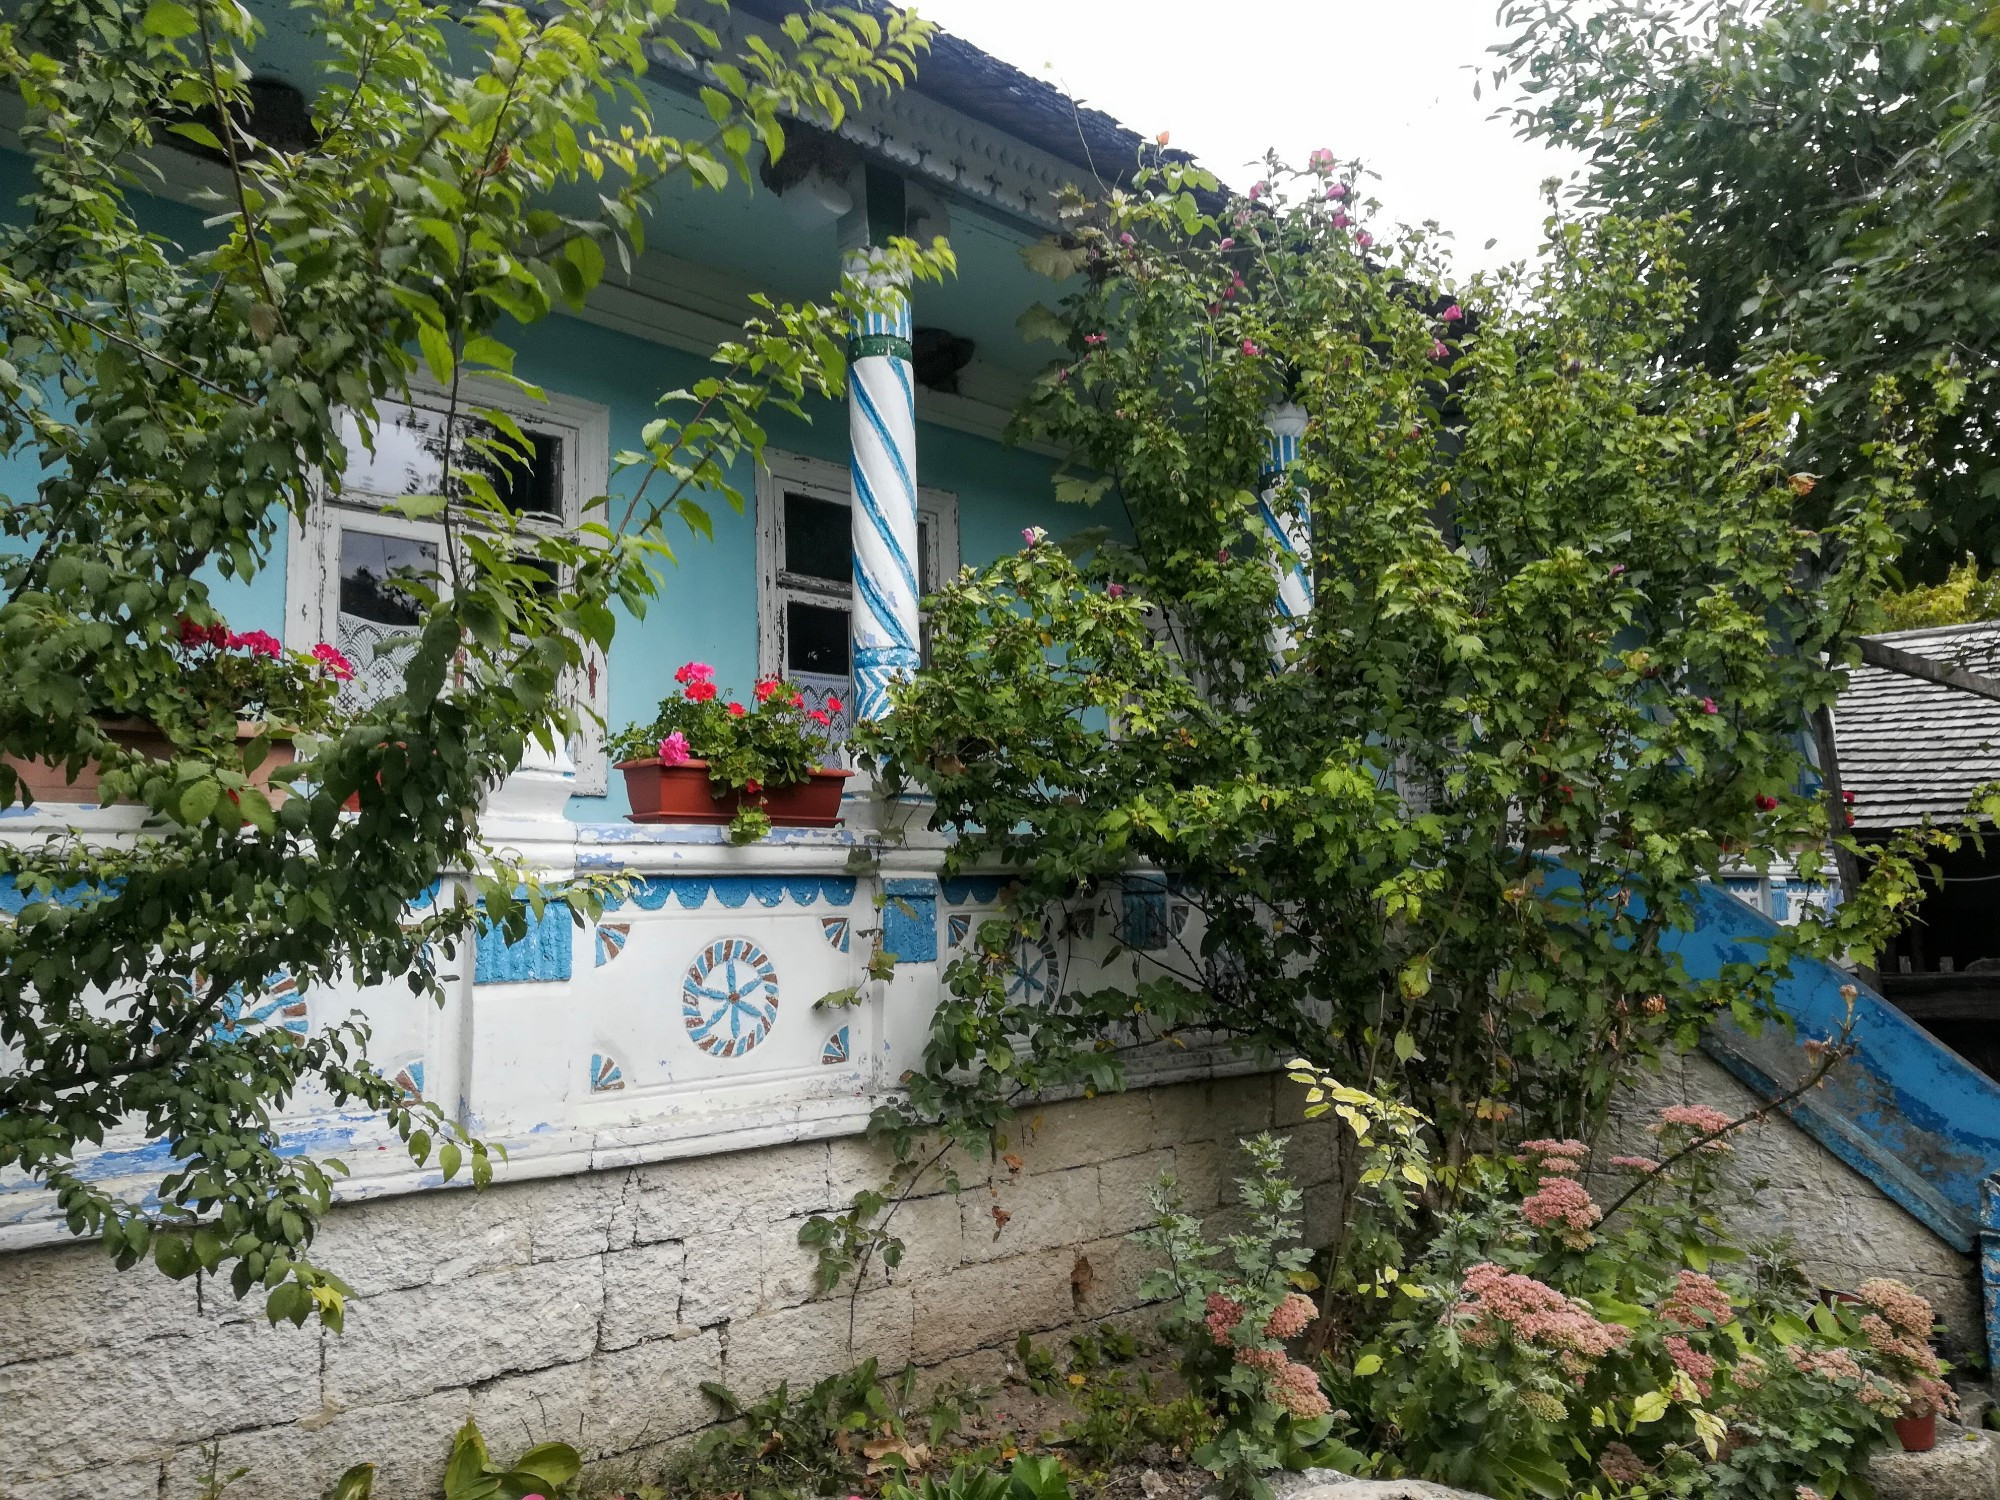 Old Orhei, Moldova